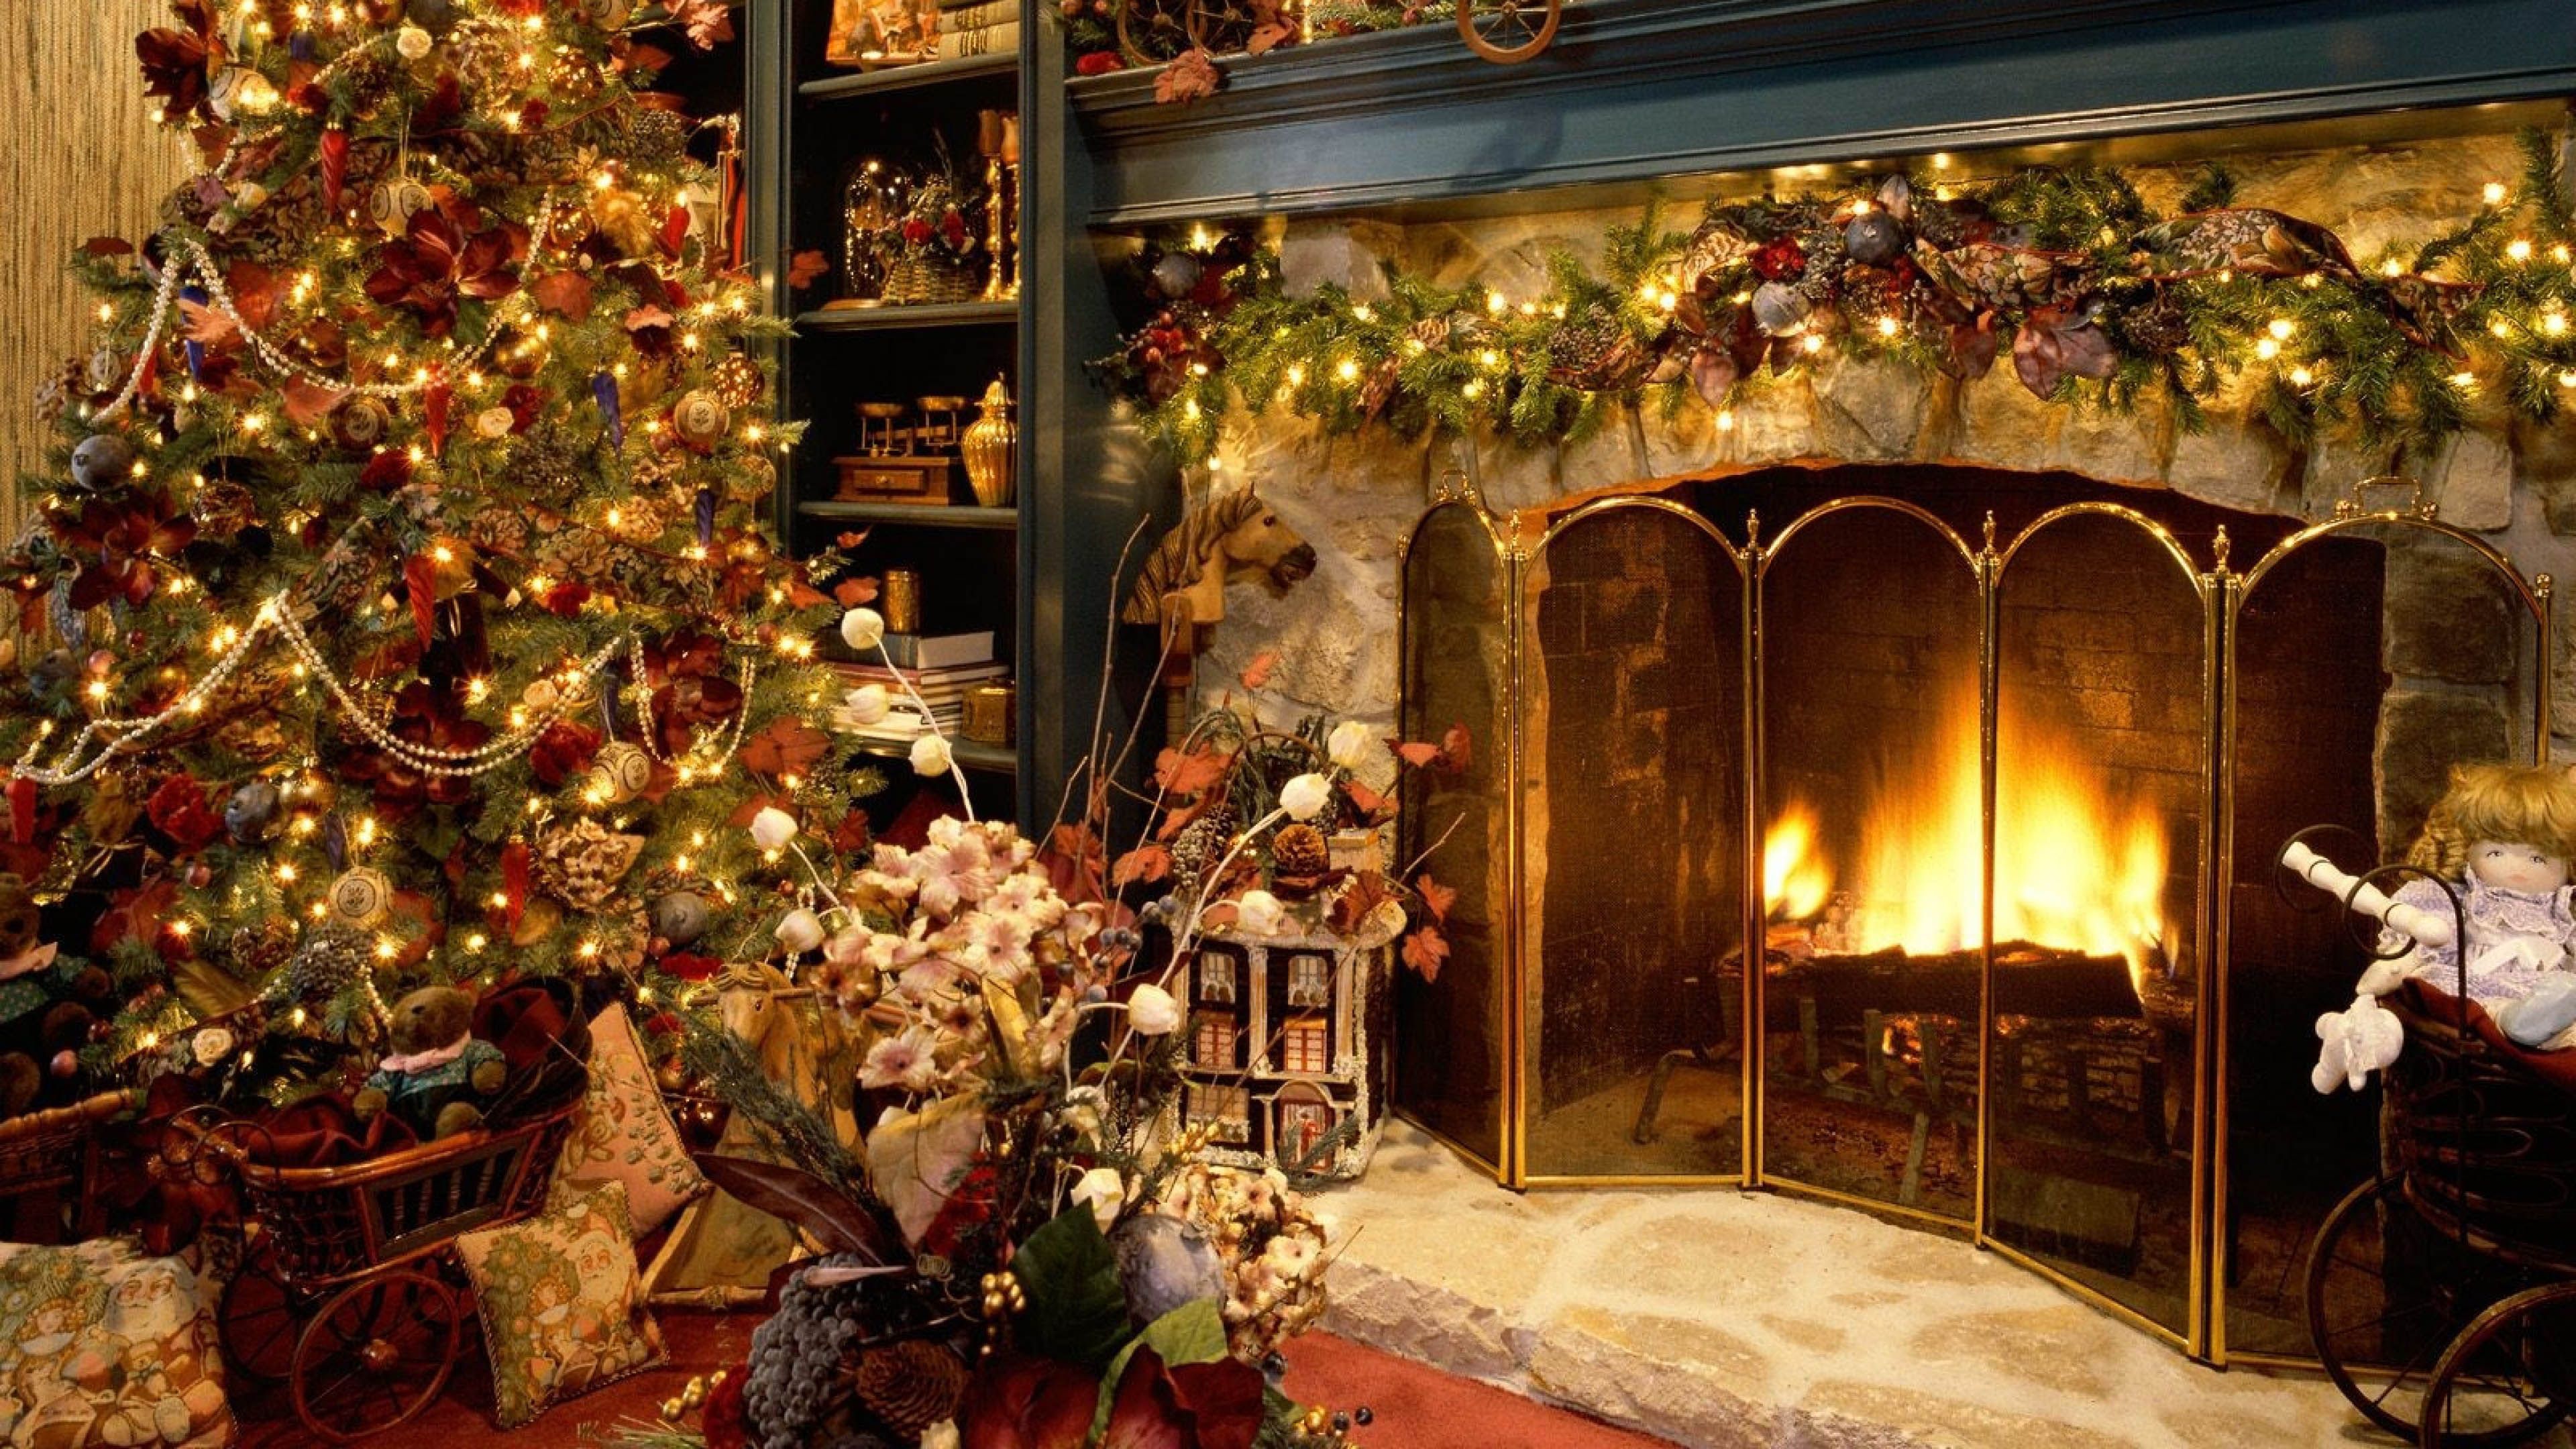 Christmas Fireplace 3840x2160 wallpaper. Christmas tree